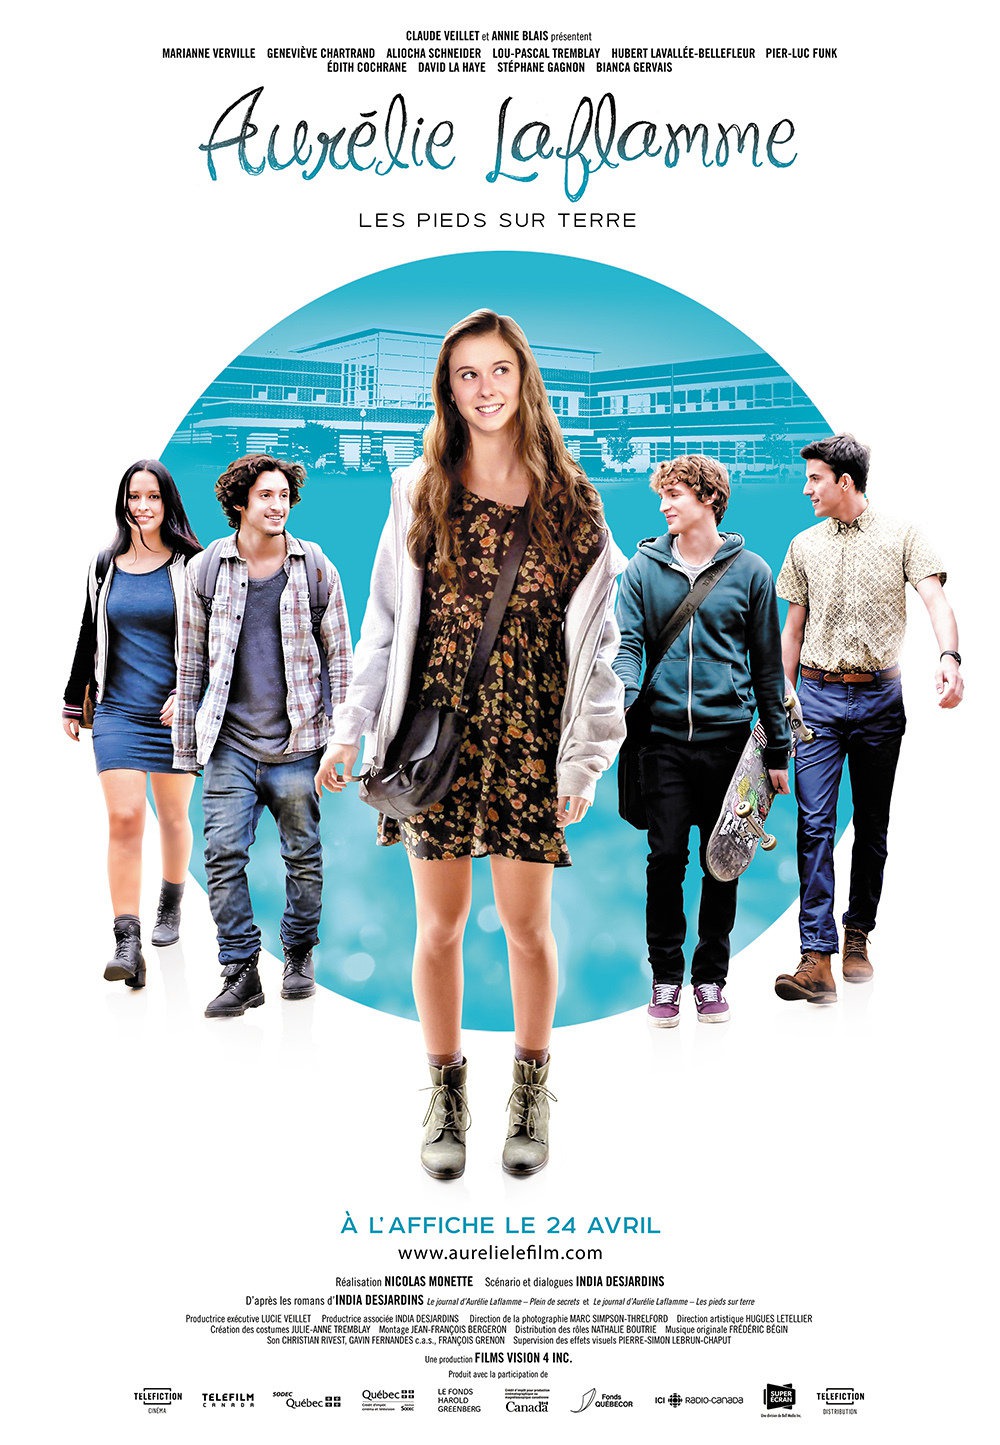 Extra Large Movie Poster Image for Aurélie Laflamme: Les pieds sur terre 